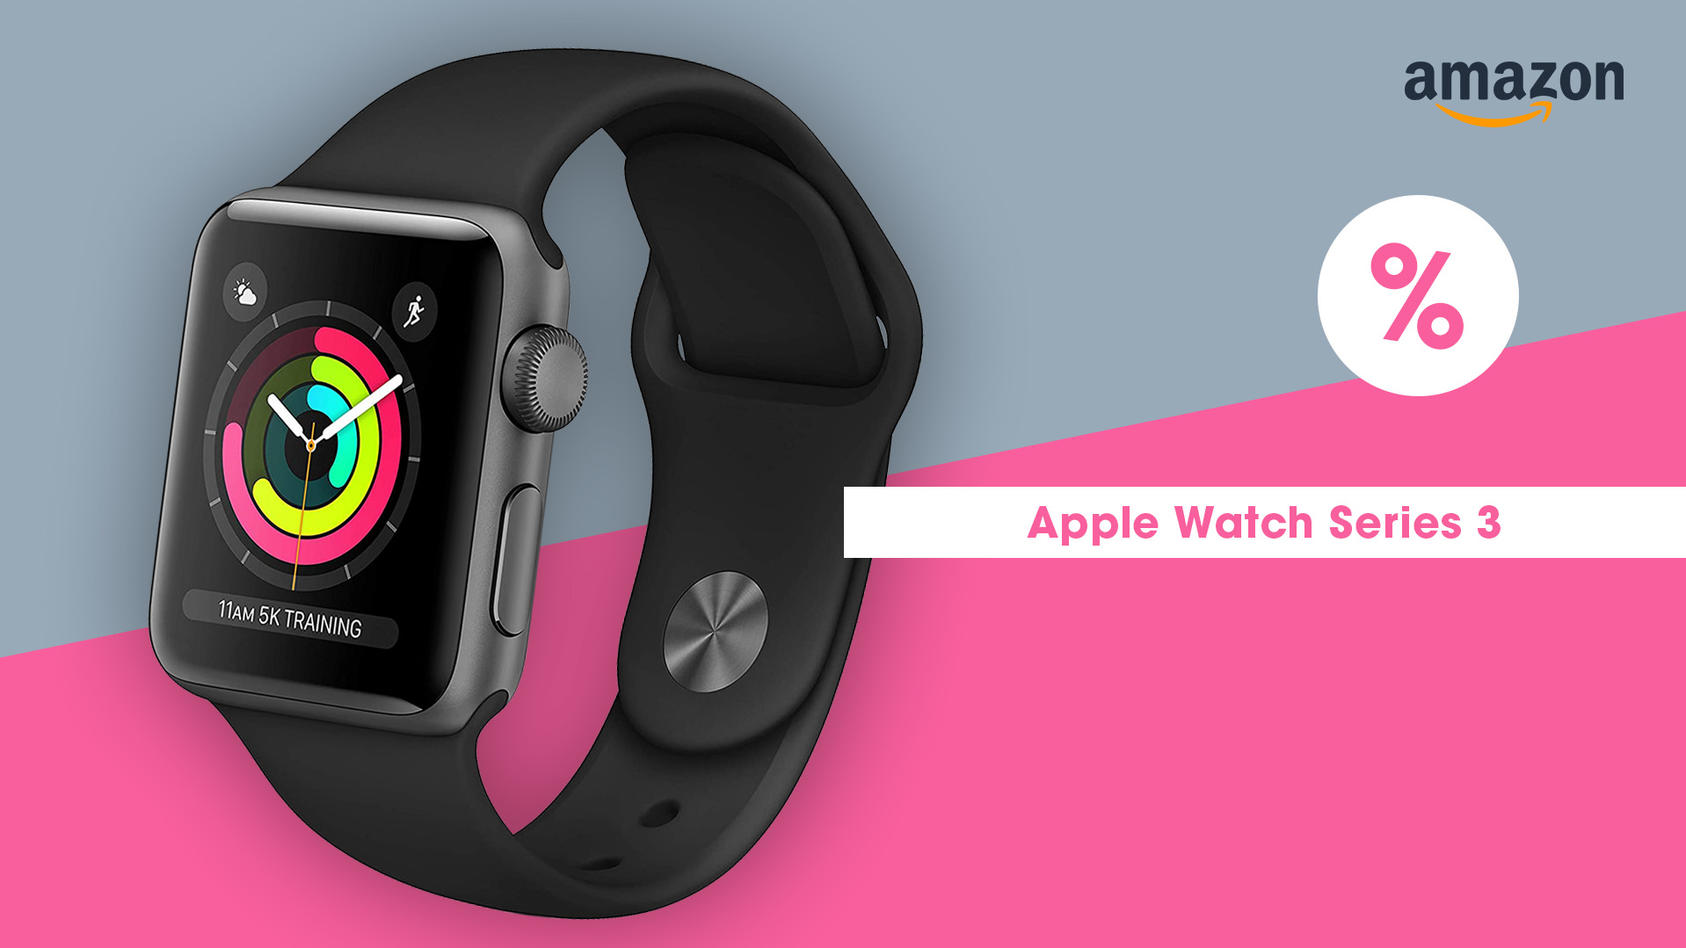 apple-watch-3-dieses-modell-ist-gerade-im-cyber-monday-angebot